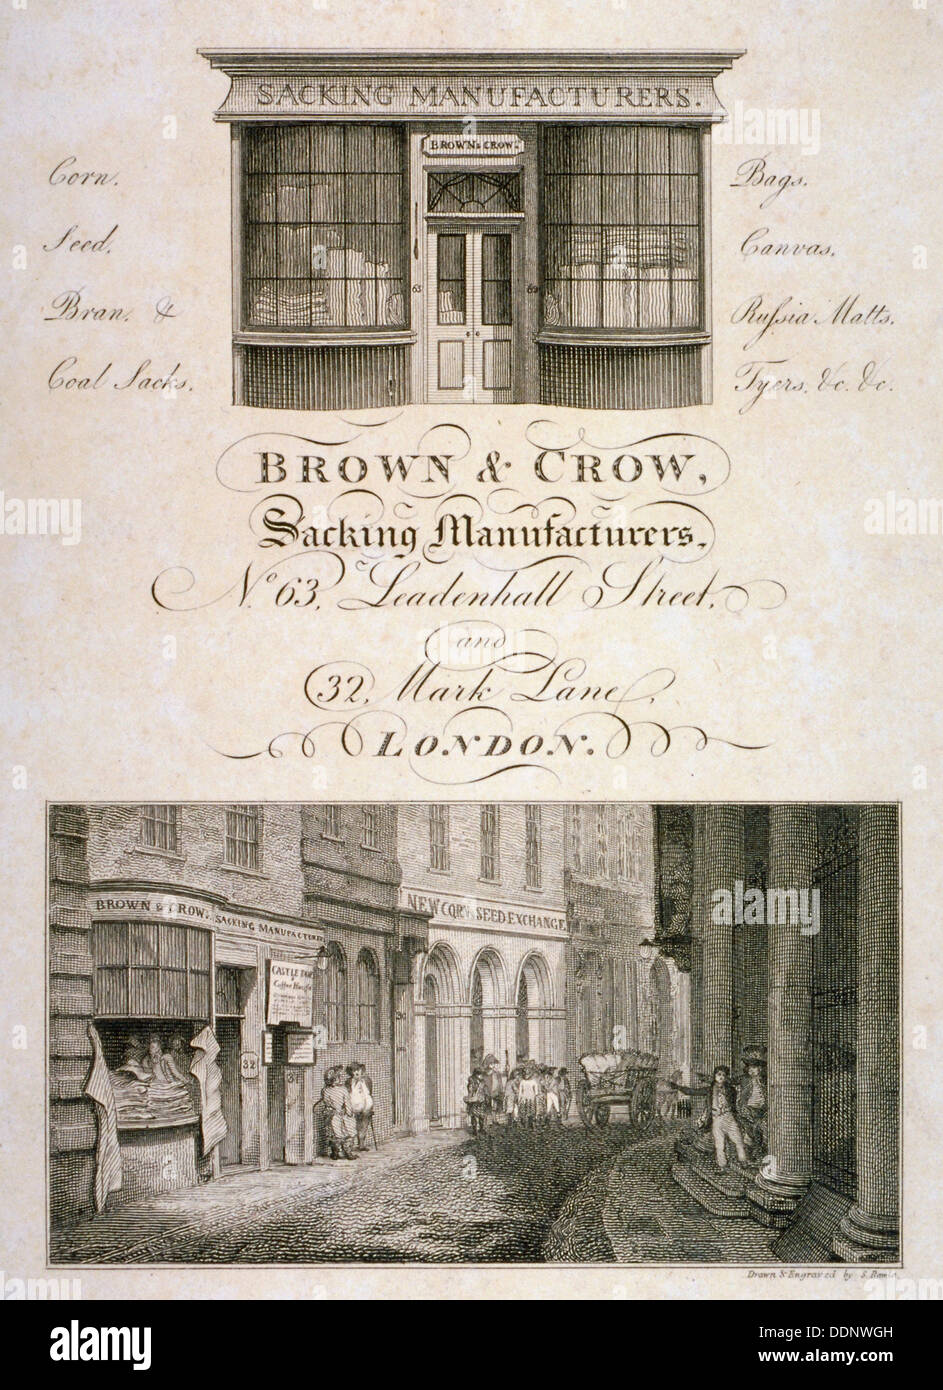 Negozio di fronte di marrone e Crow, saccheggi, fabbricanti, 32 Mark Lane, Città di Londra, 1800. Artista: Samuel Rawle Foto Stock